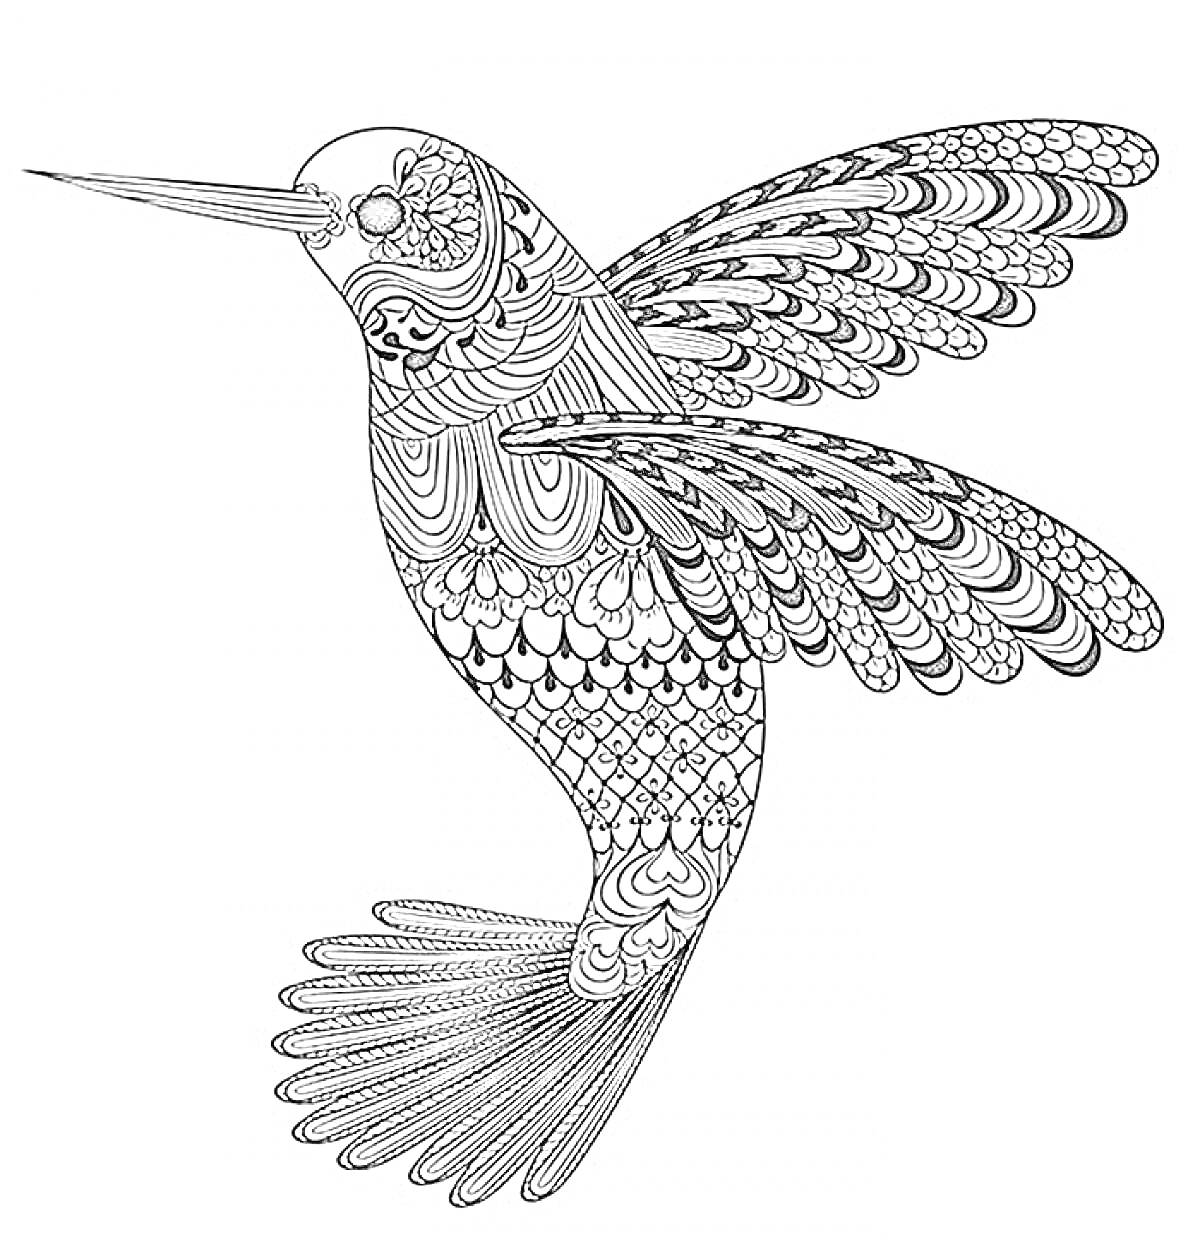 Колибри с узорами на крыльях, теле и хвосте